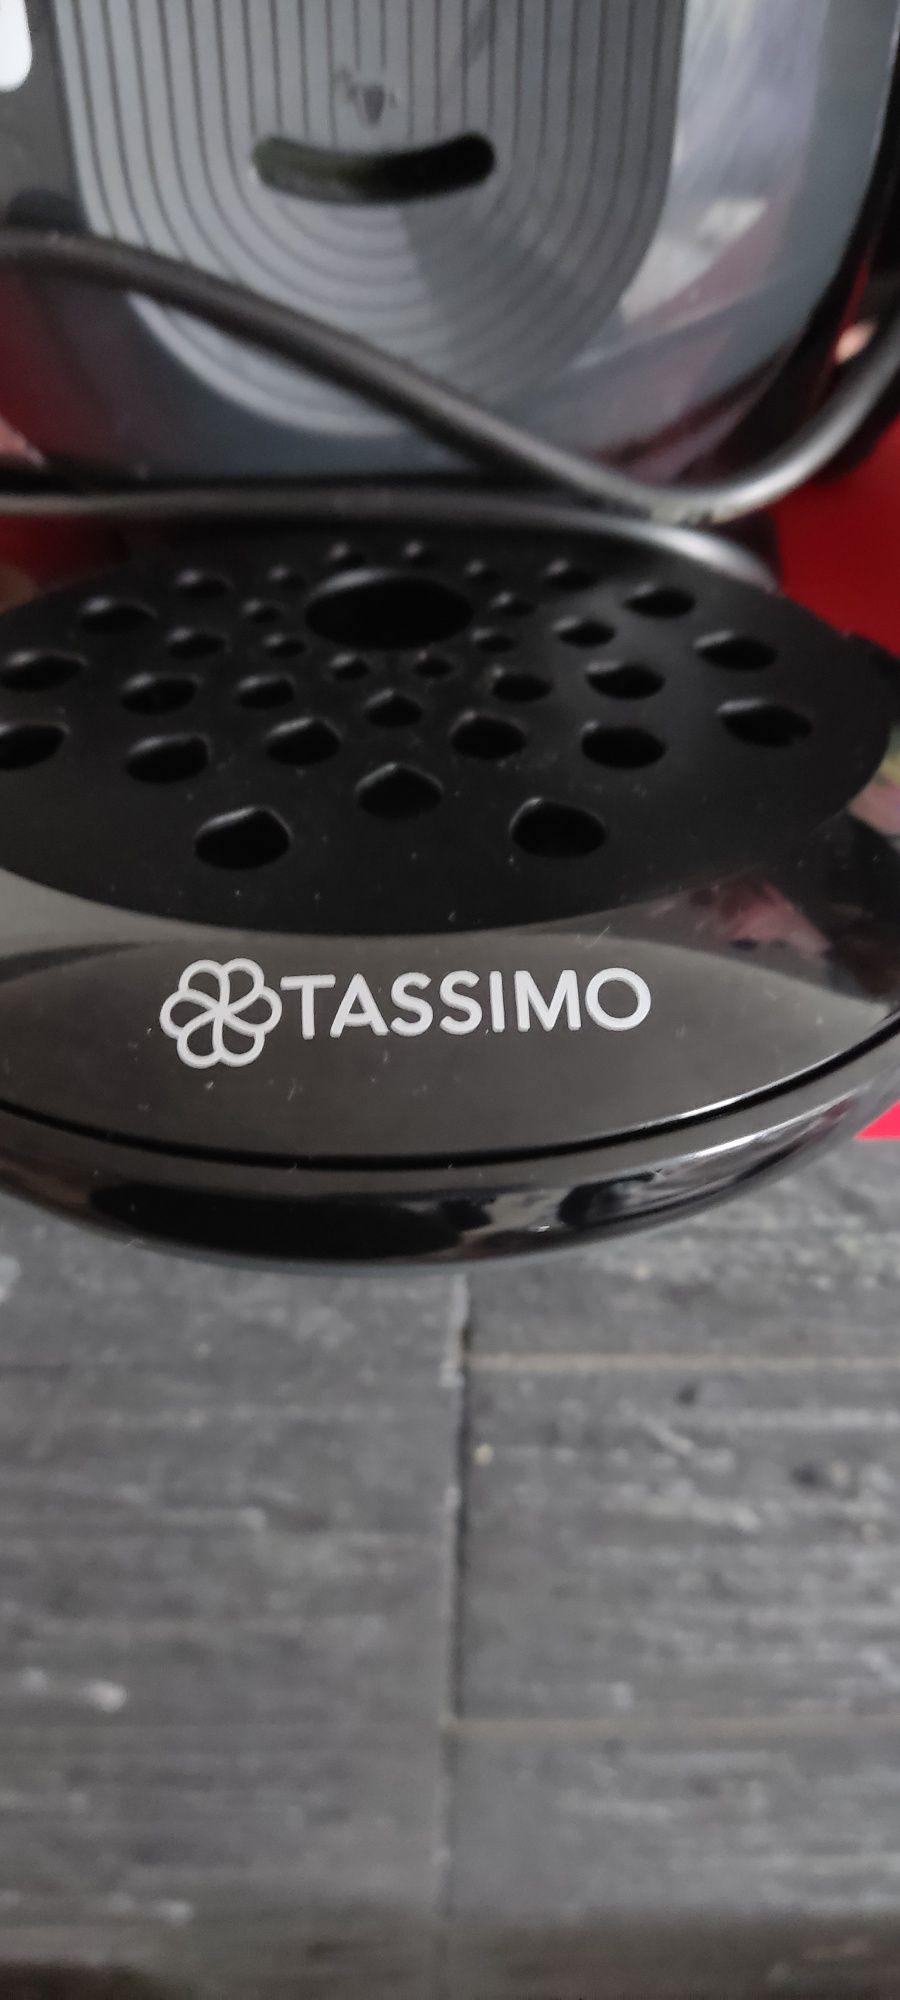 Aparat cafea TASSIMO+o cutie de capsule tassimo